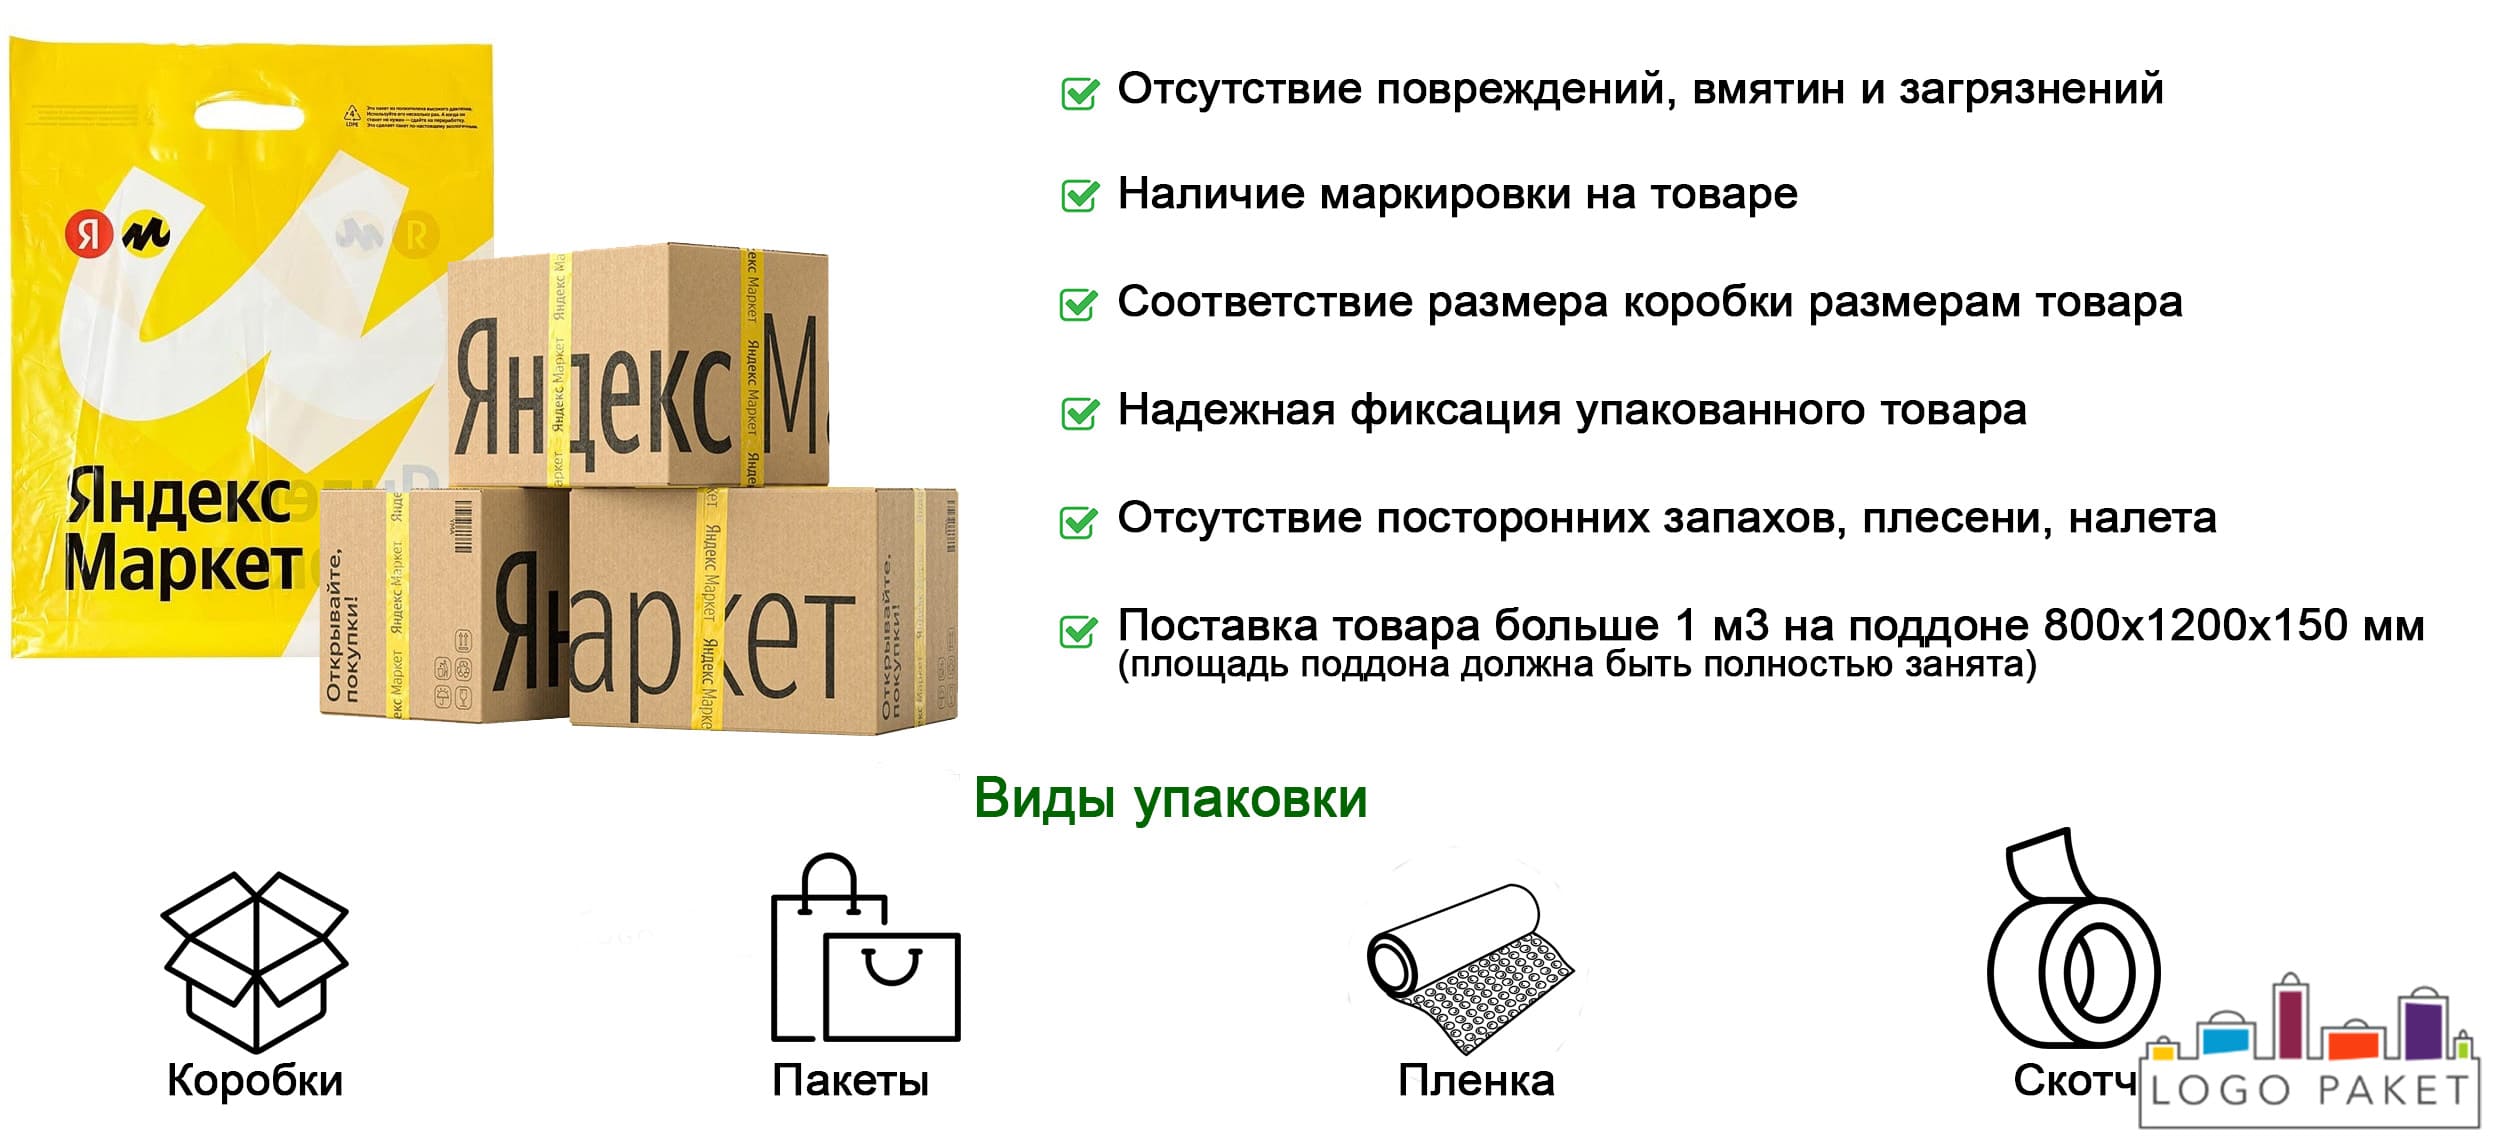 Коробки для Яндекс Маркет инфографика.